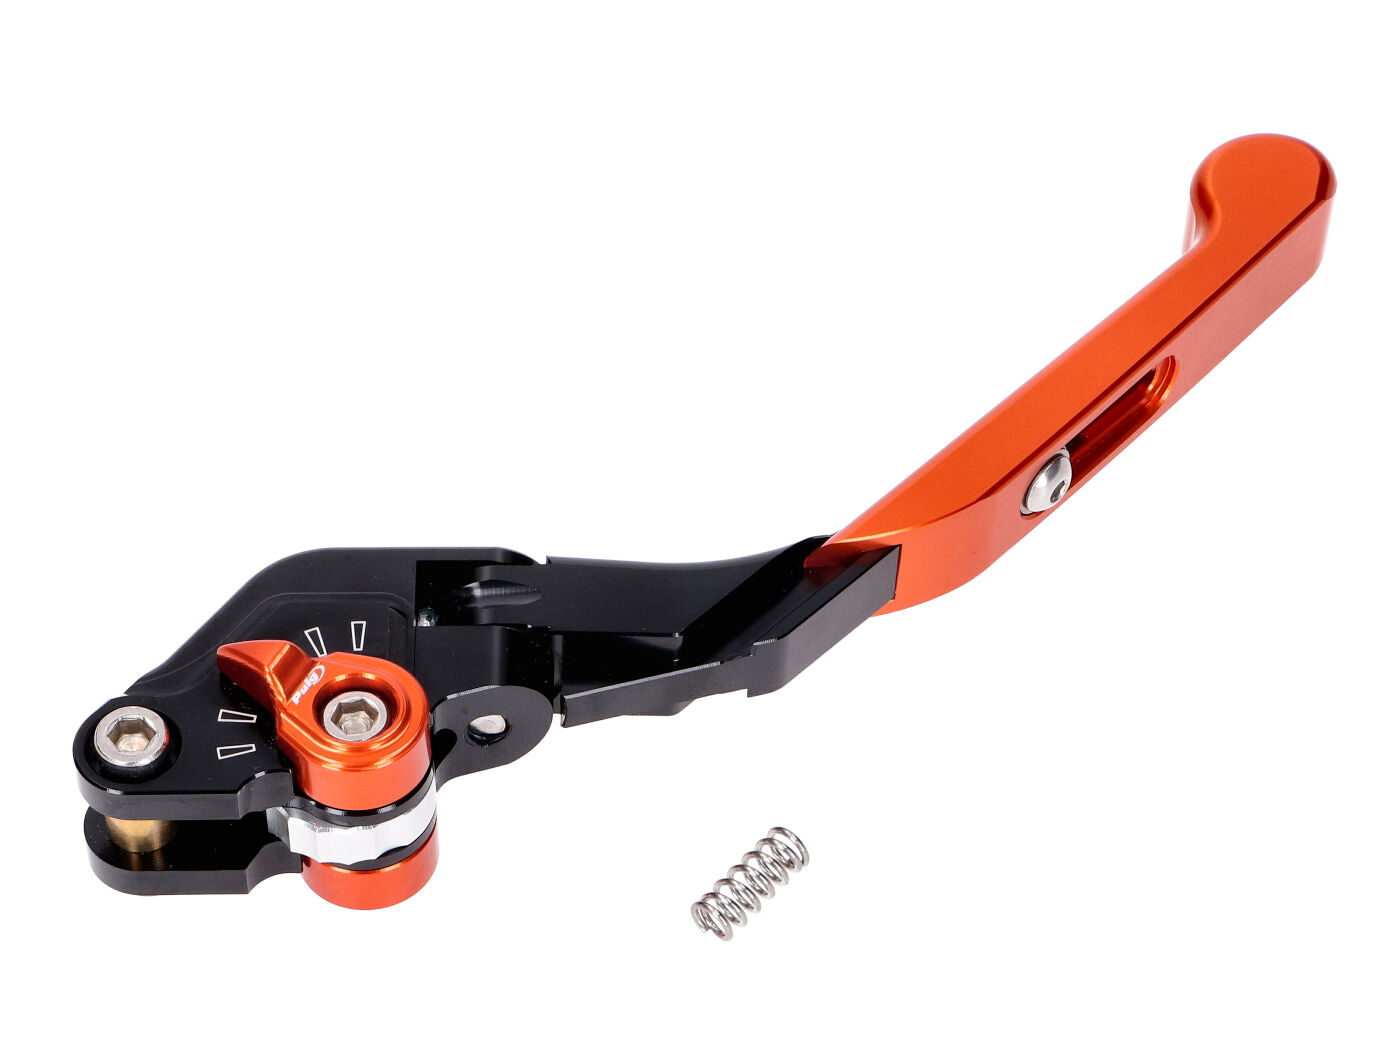 Brake Lever Puig 3.0 Front Adjustable, Foldable, Adjustable Length - Orange Black